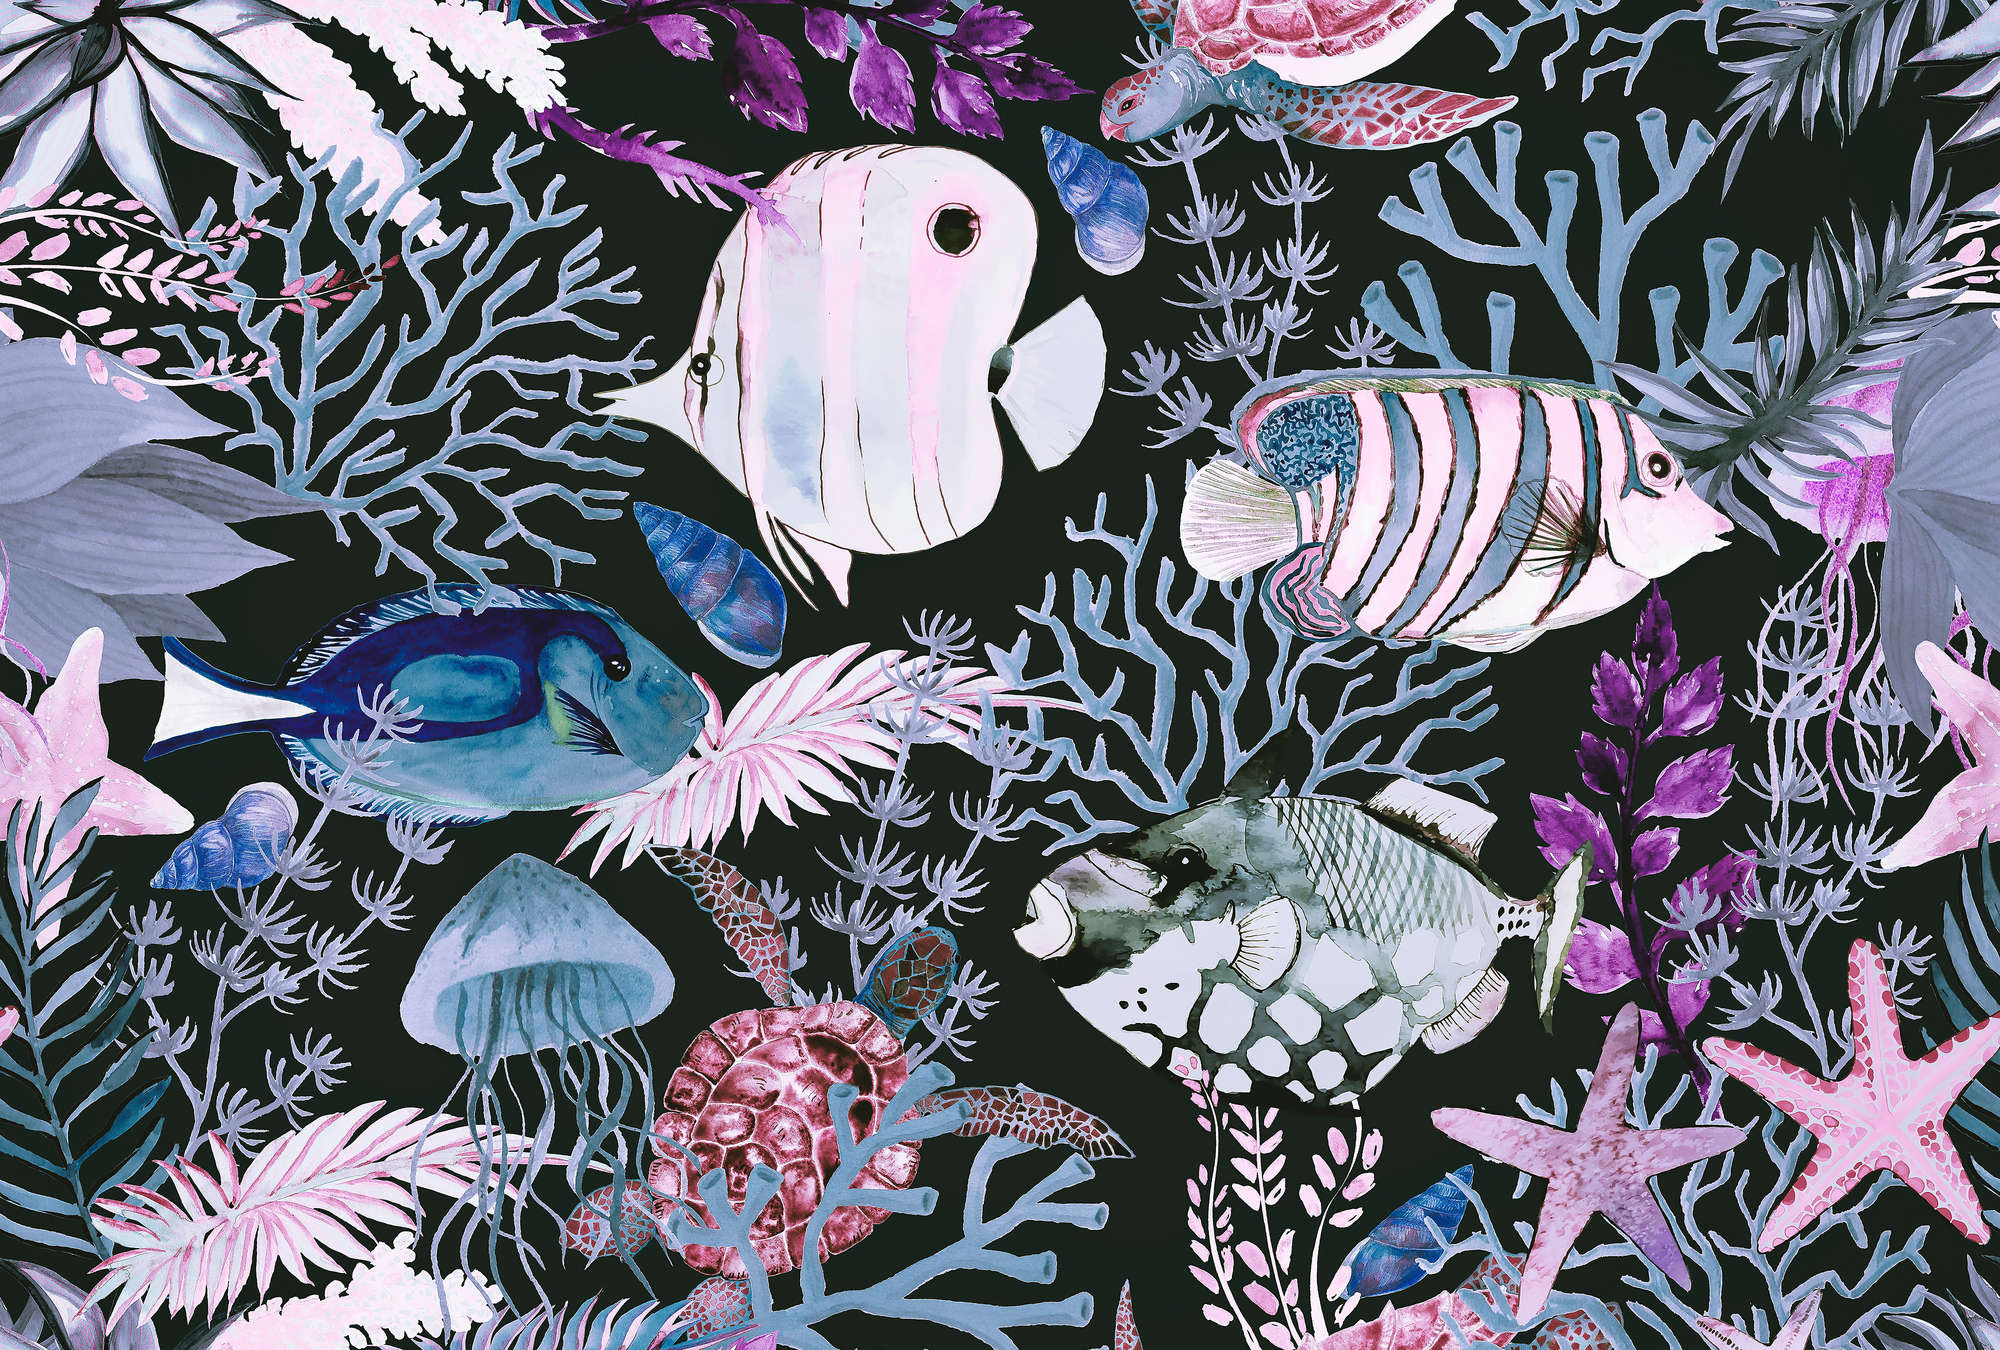             Onderwaterbehang met vissen en koralen in aquarelstijl
        